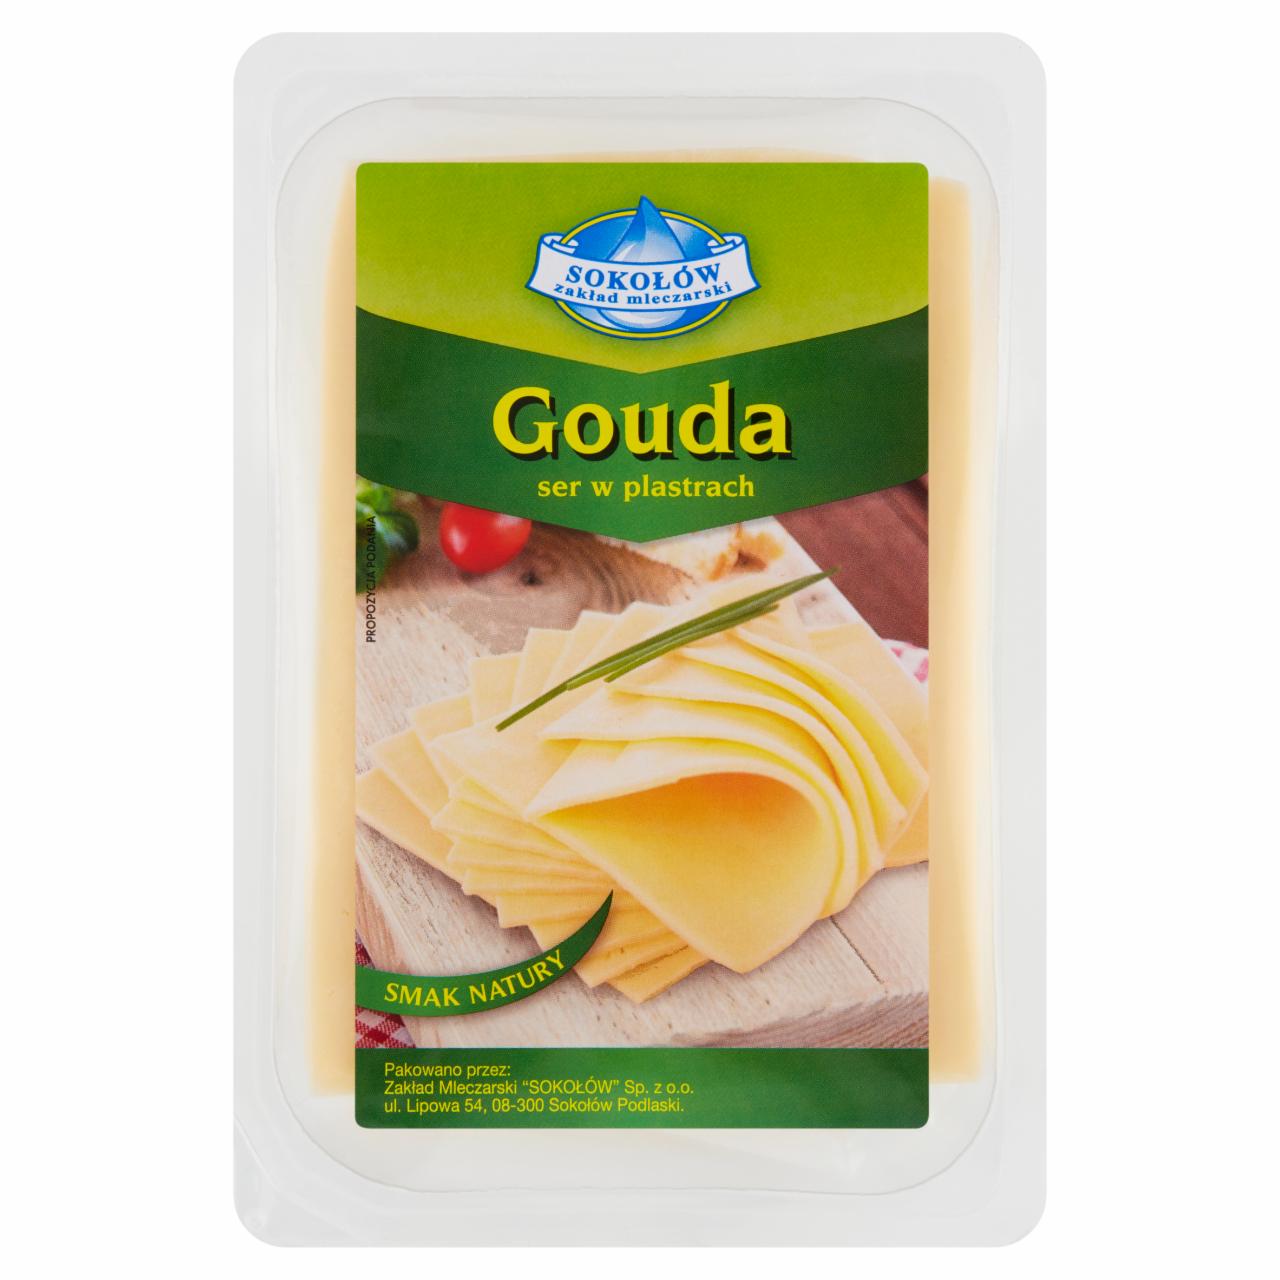 Zdjęcia - Sokołów Gouda ser w plastrach 500 g